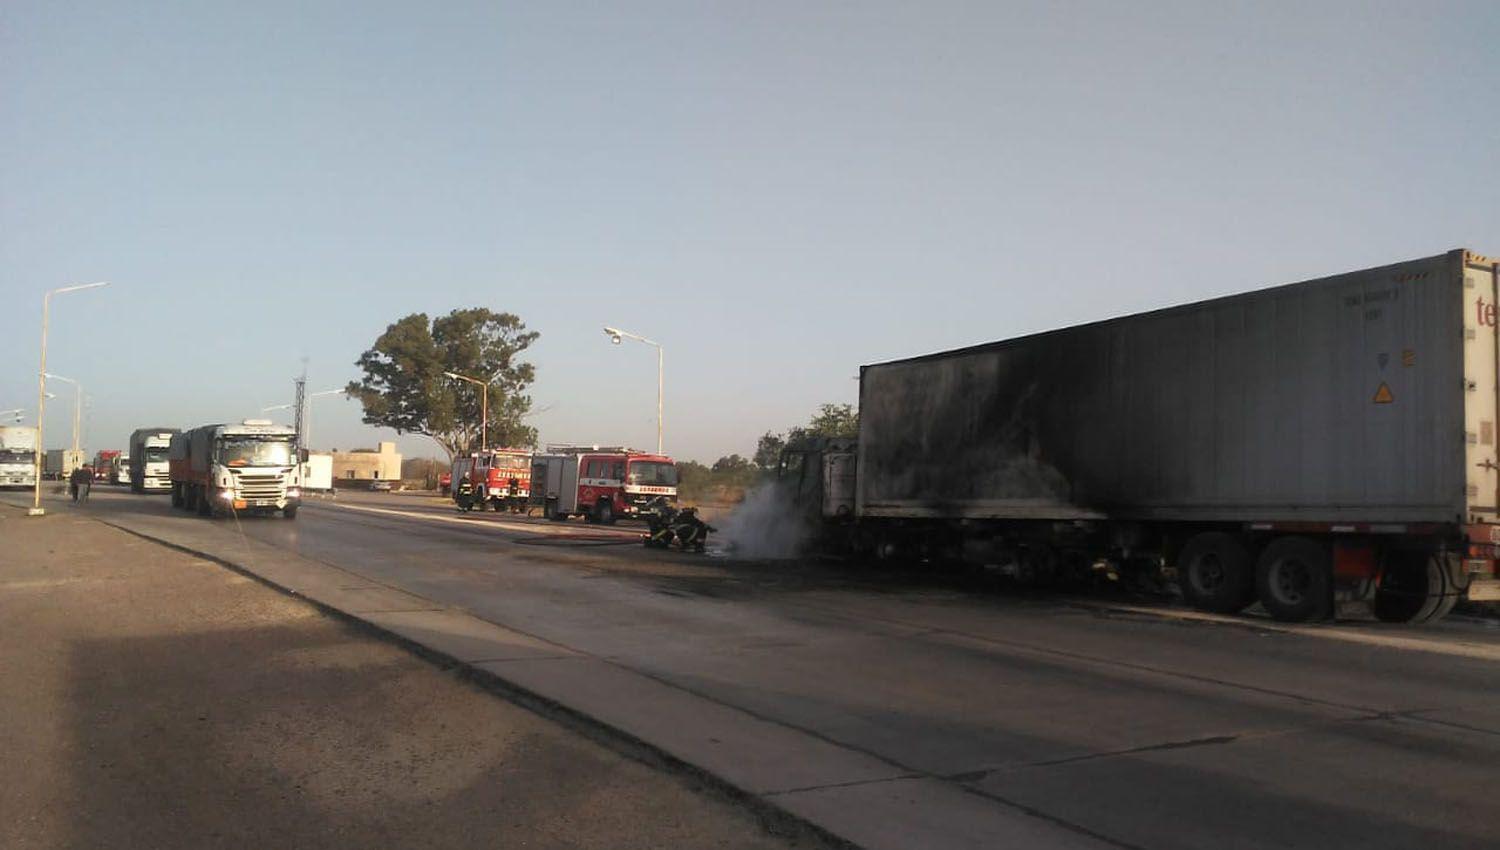 Un camioacuten se prendioacute fuego en la ruta 34 y de milagro no provocoacute accidentes